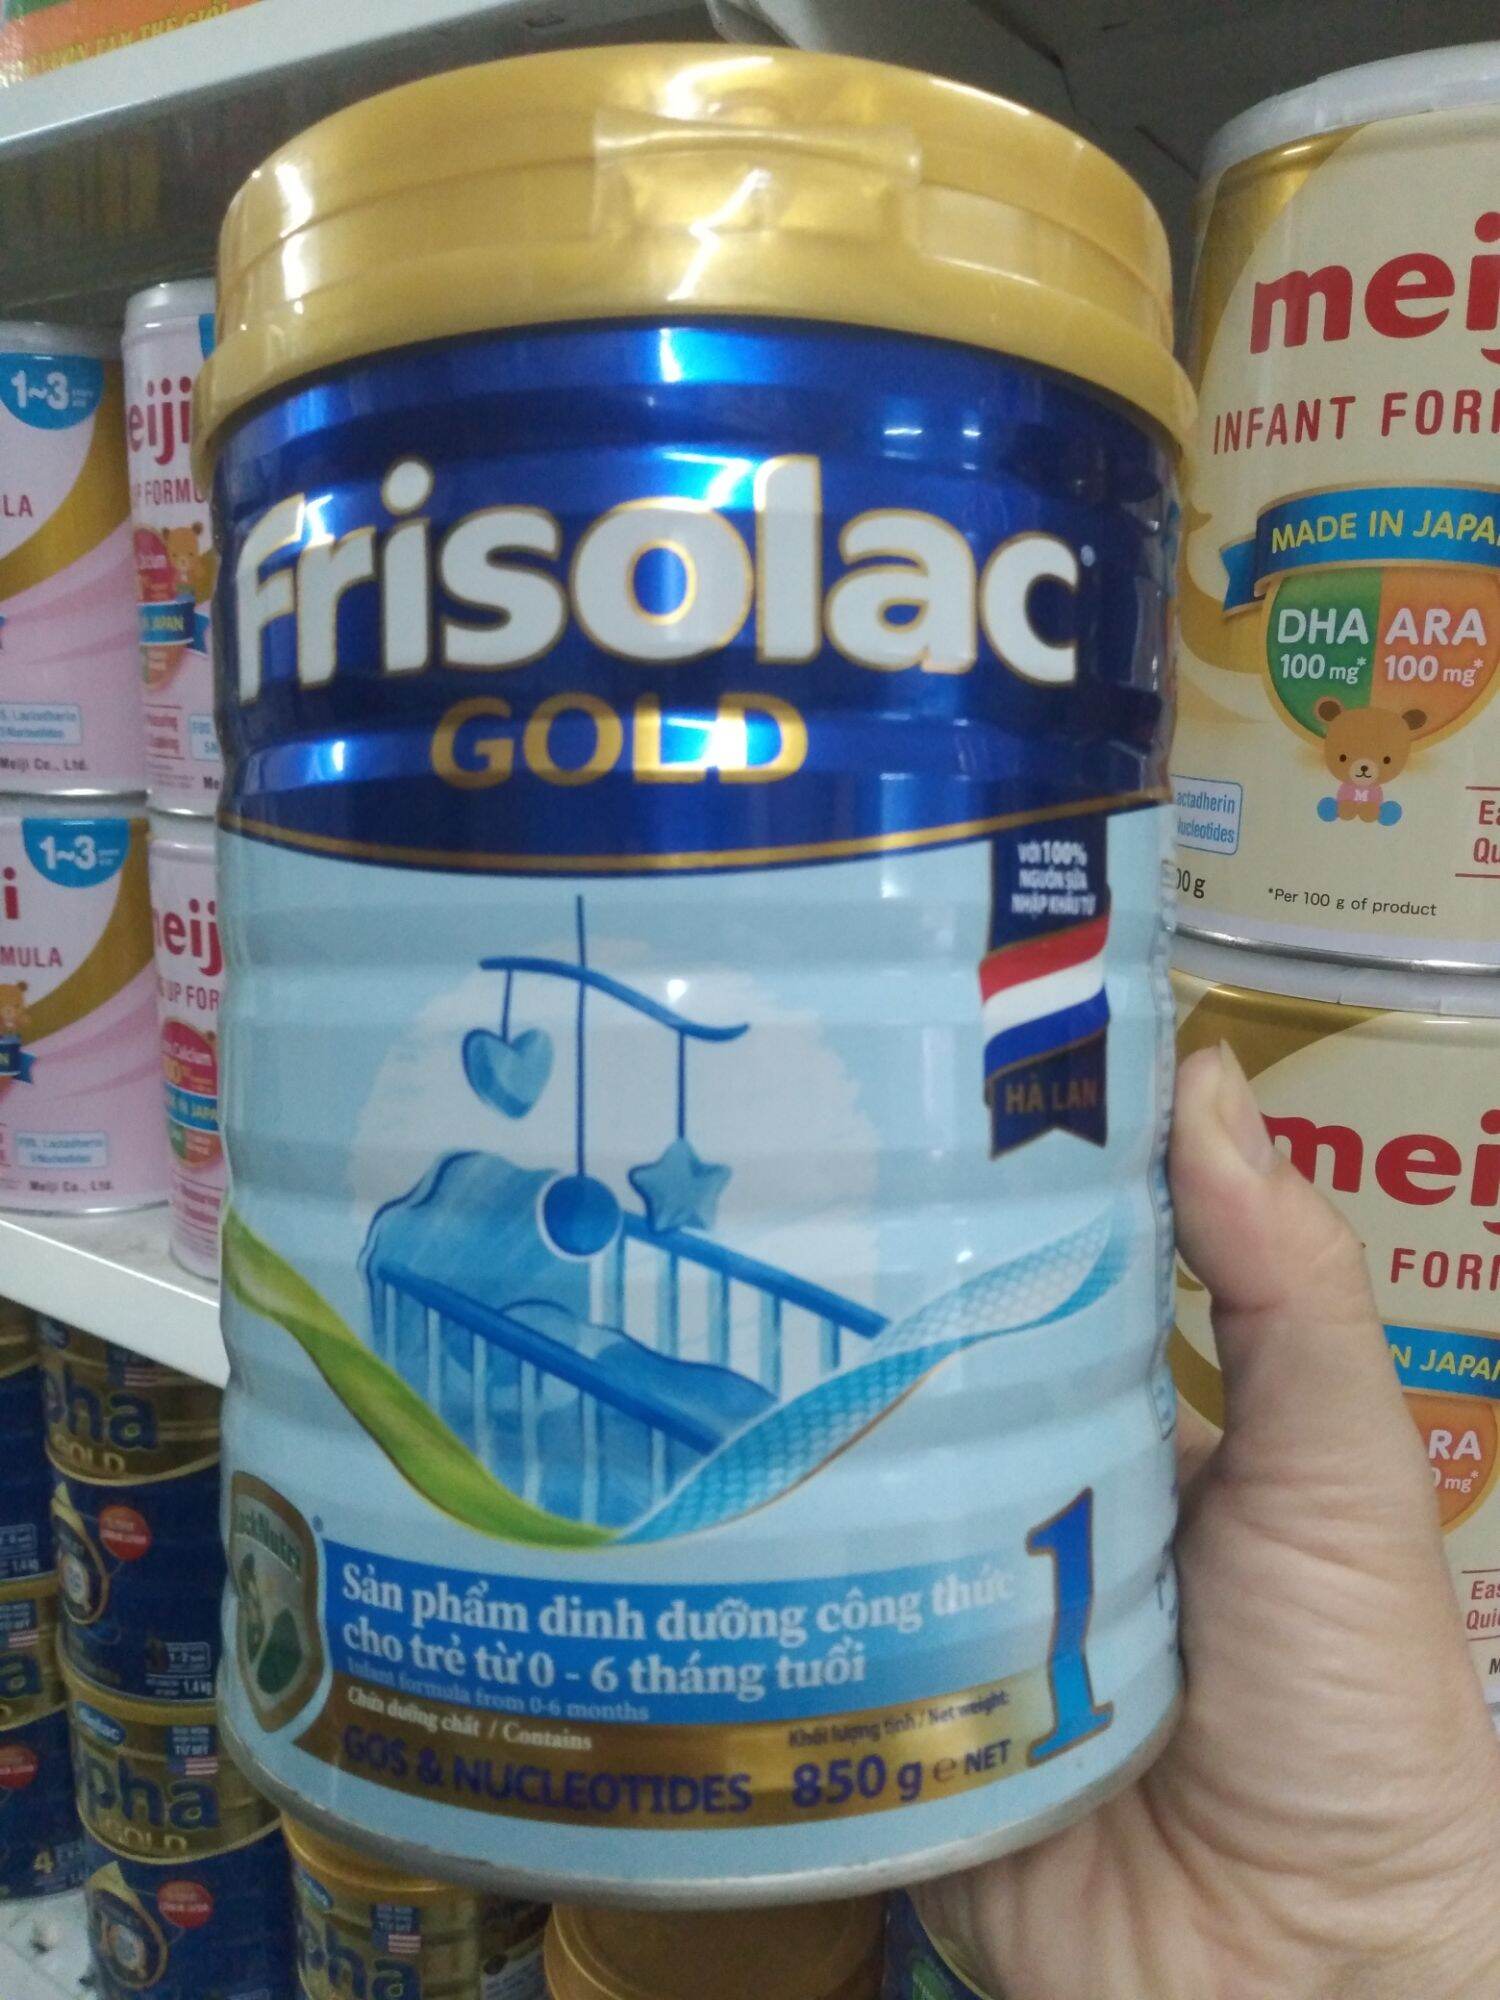 Sữa Frisolac Gold 1 850g dành cho trẻ từ 0-6 tháng